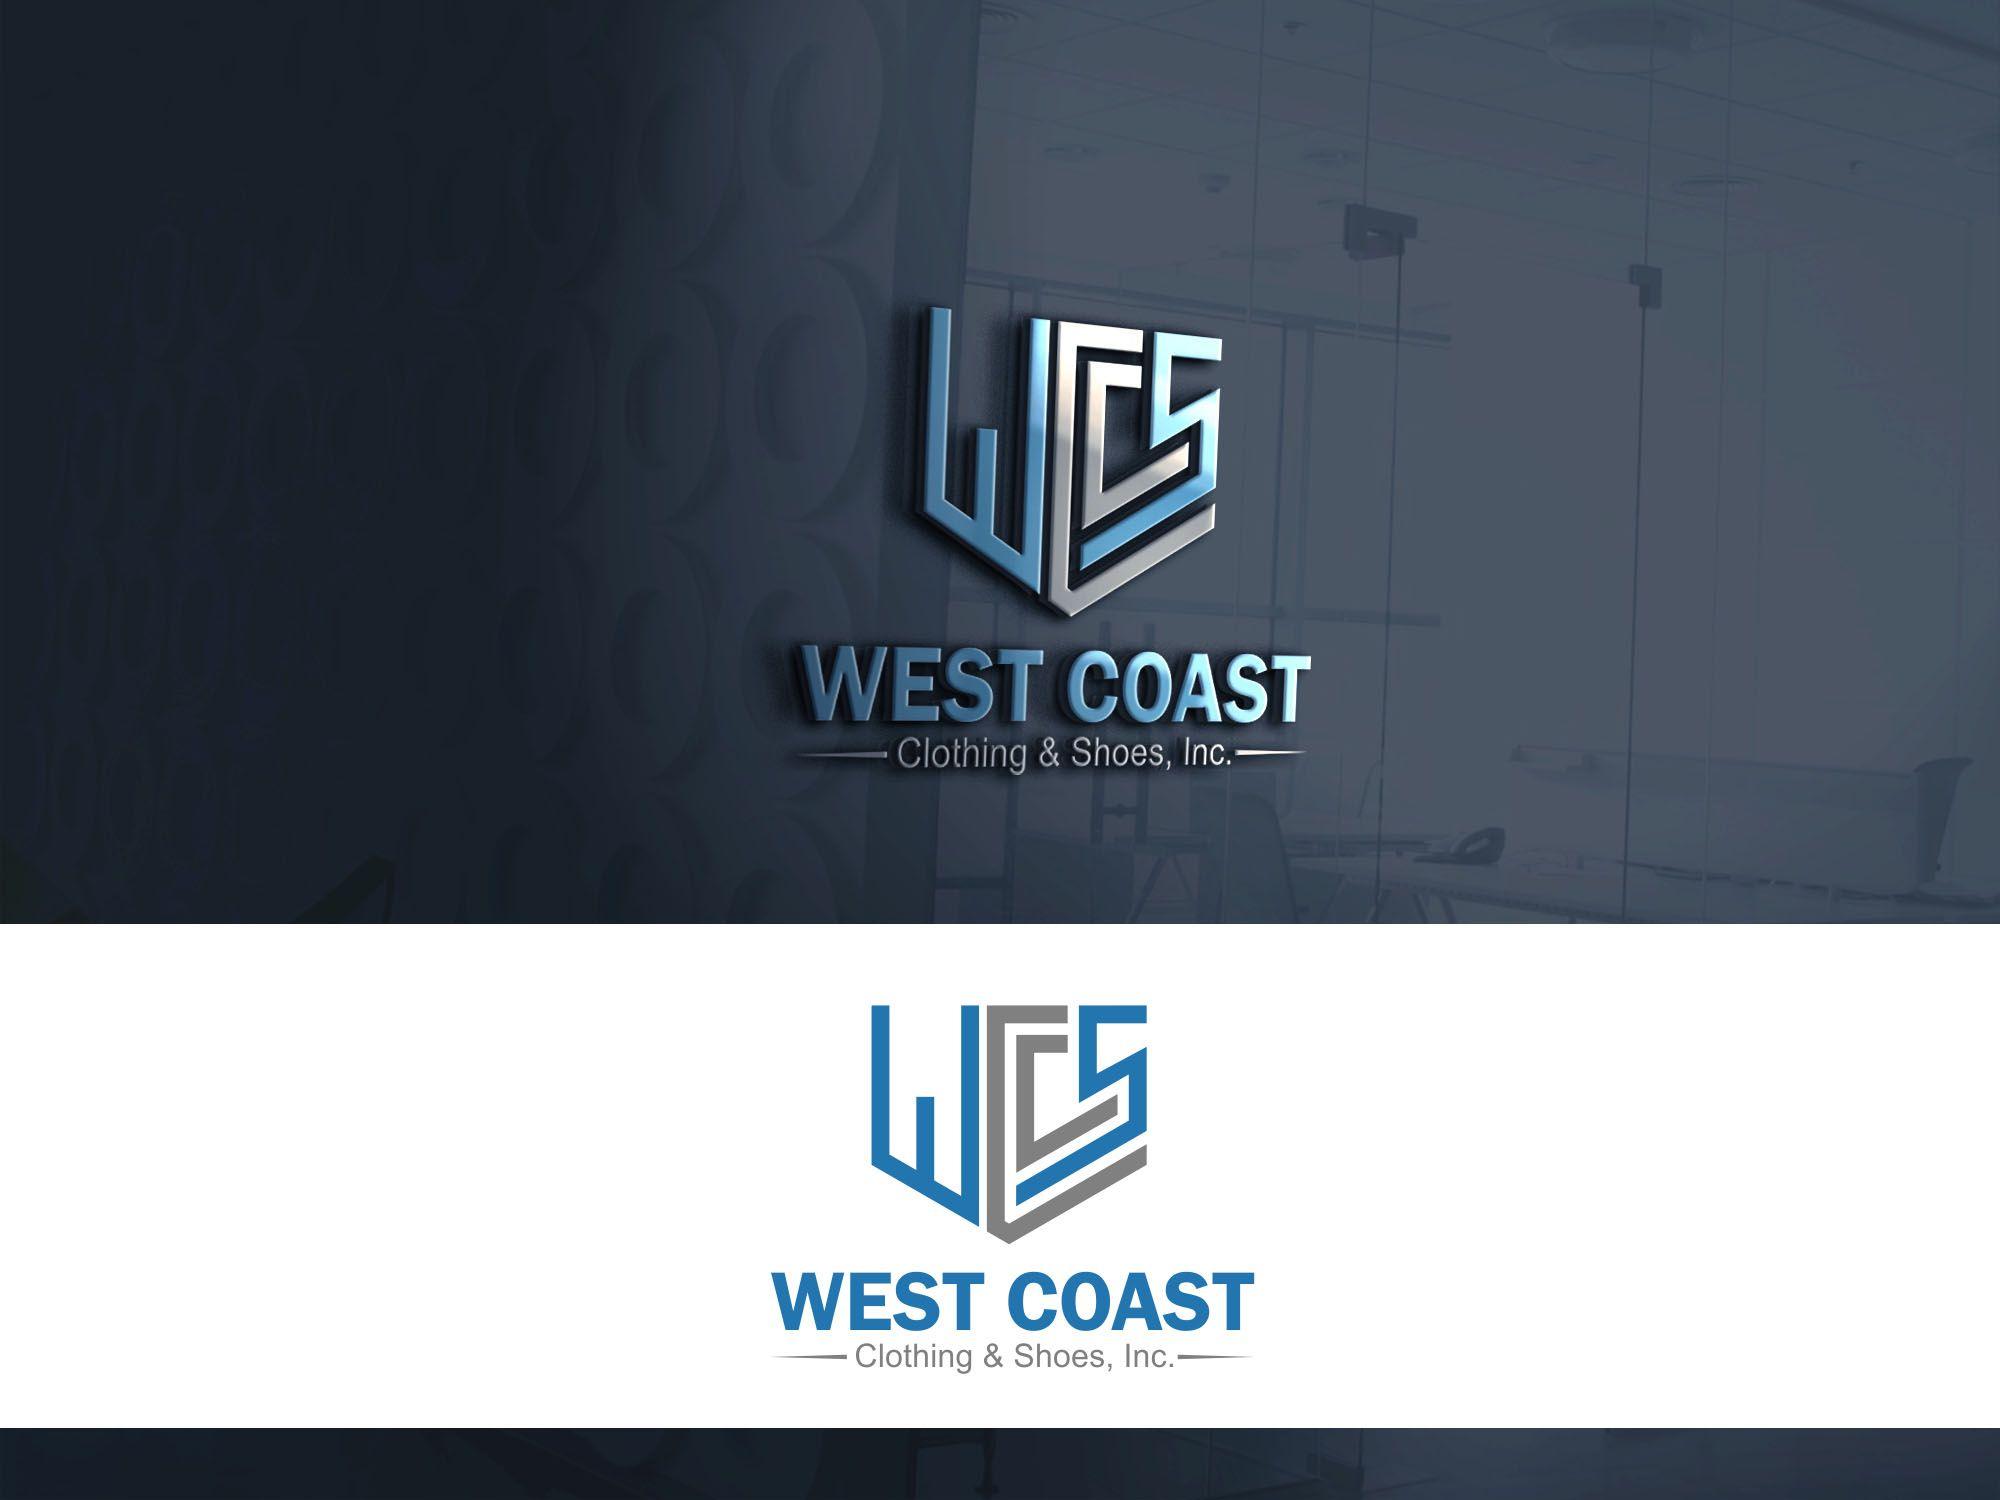 Inc Clothing Logo - DesignContest Coast Clothing & Shoes, Inc. West Coast